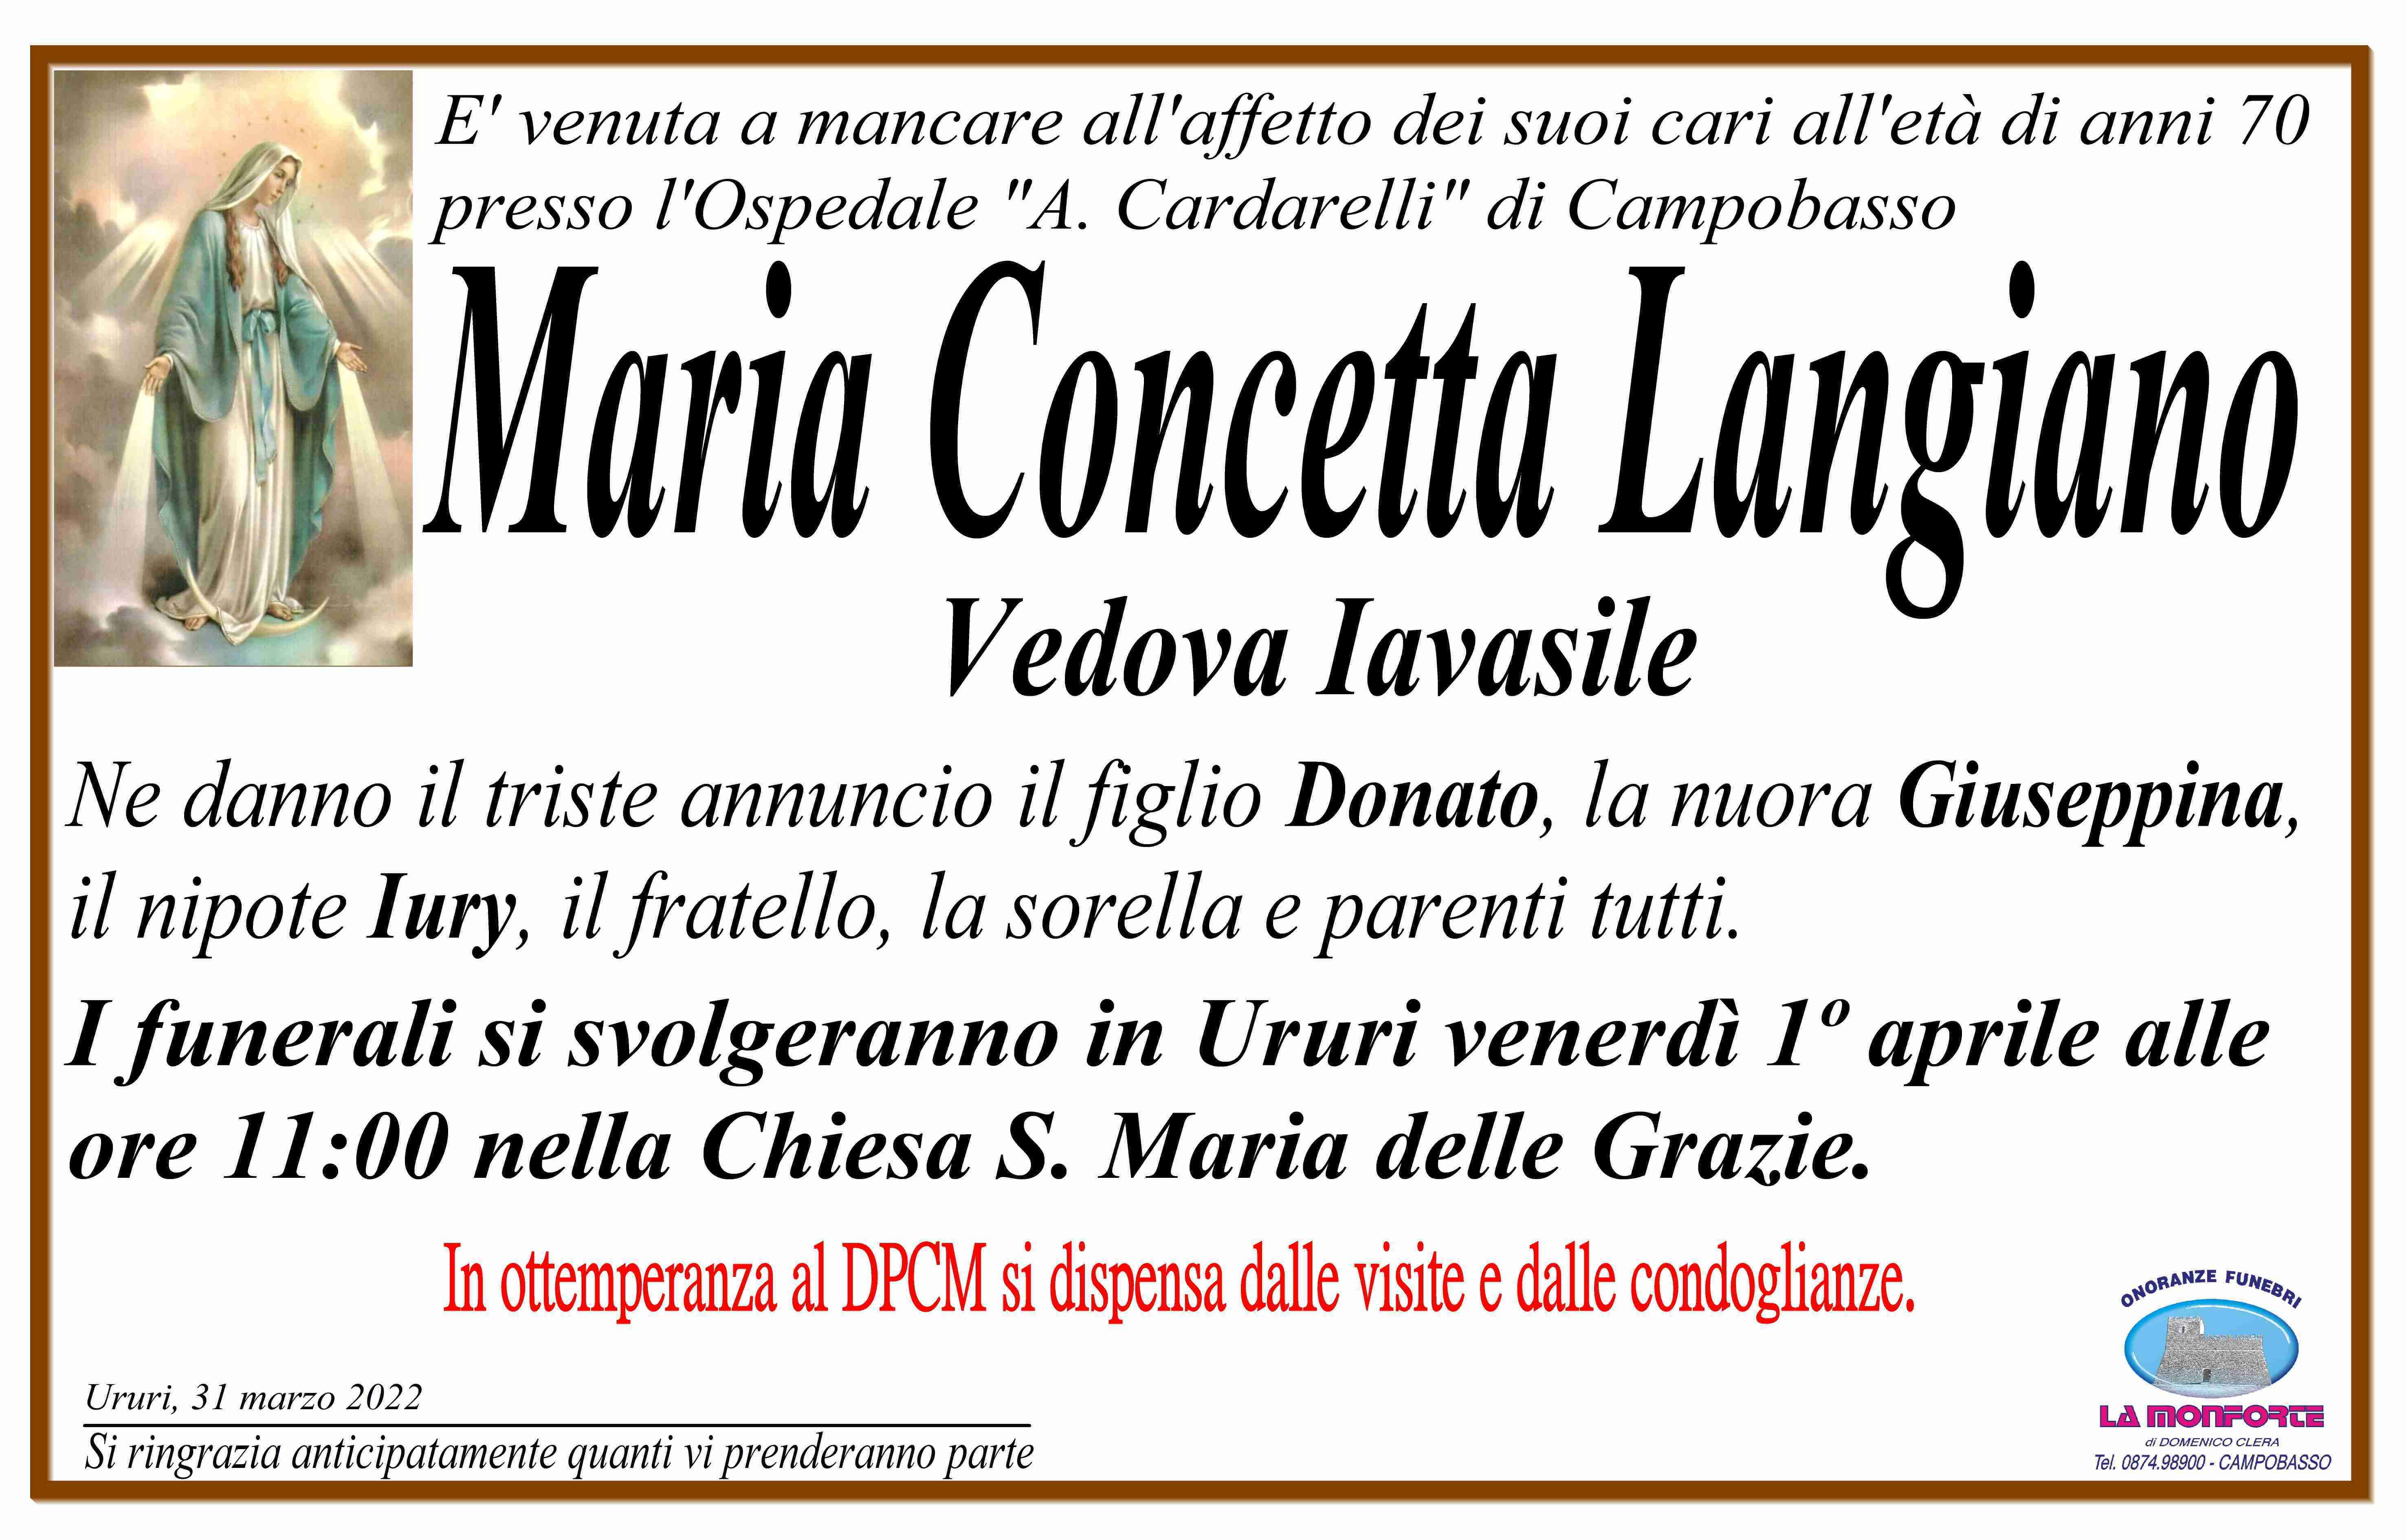 Maria Concetta Langiano